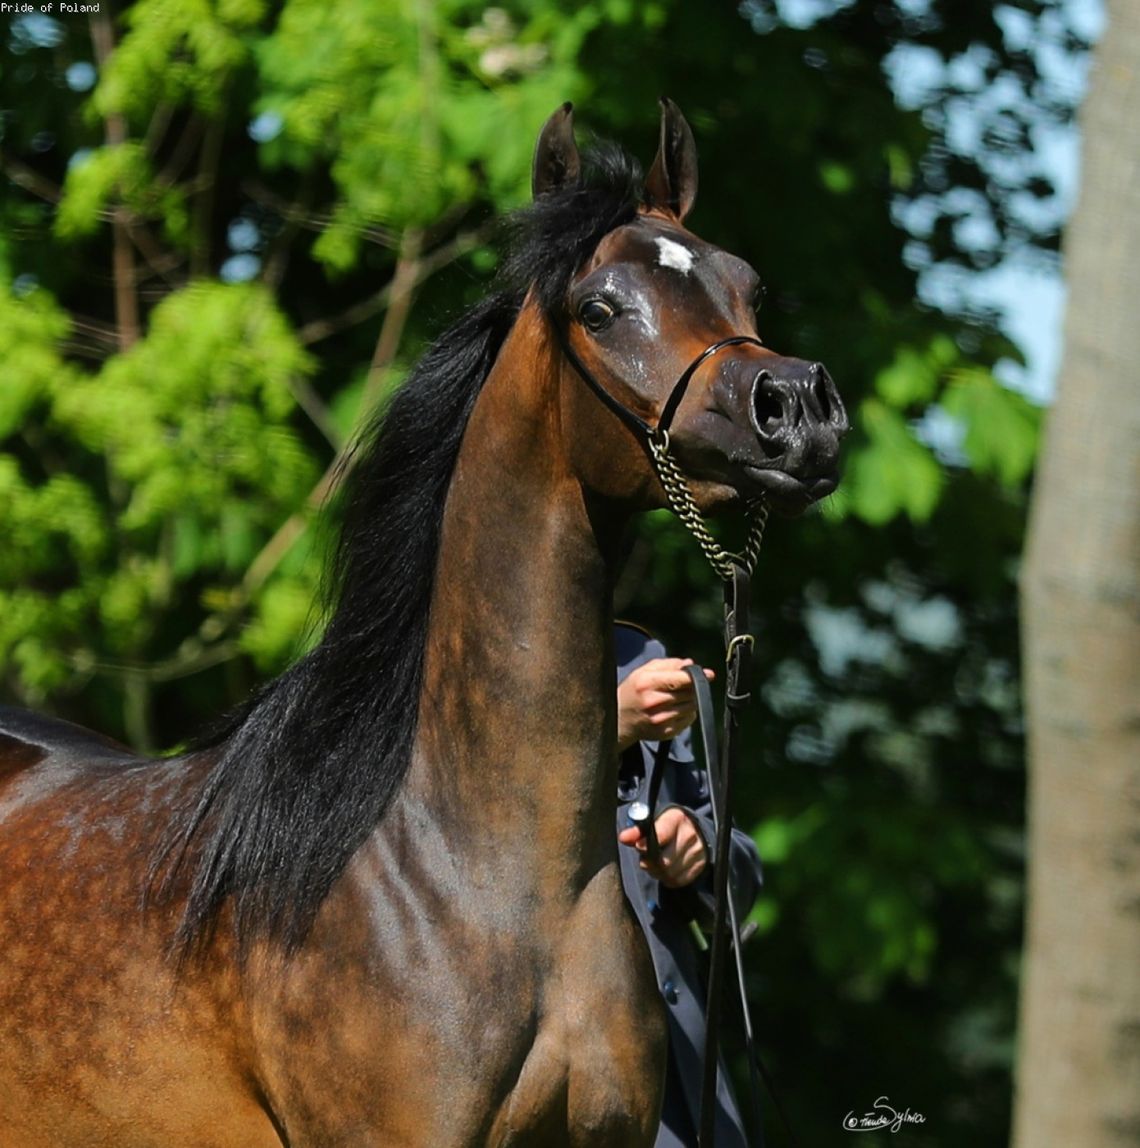 Znamy listę koni na tegoroczną aukcję Pride of Poland